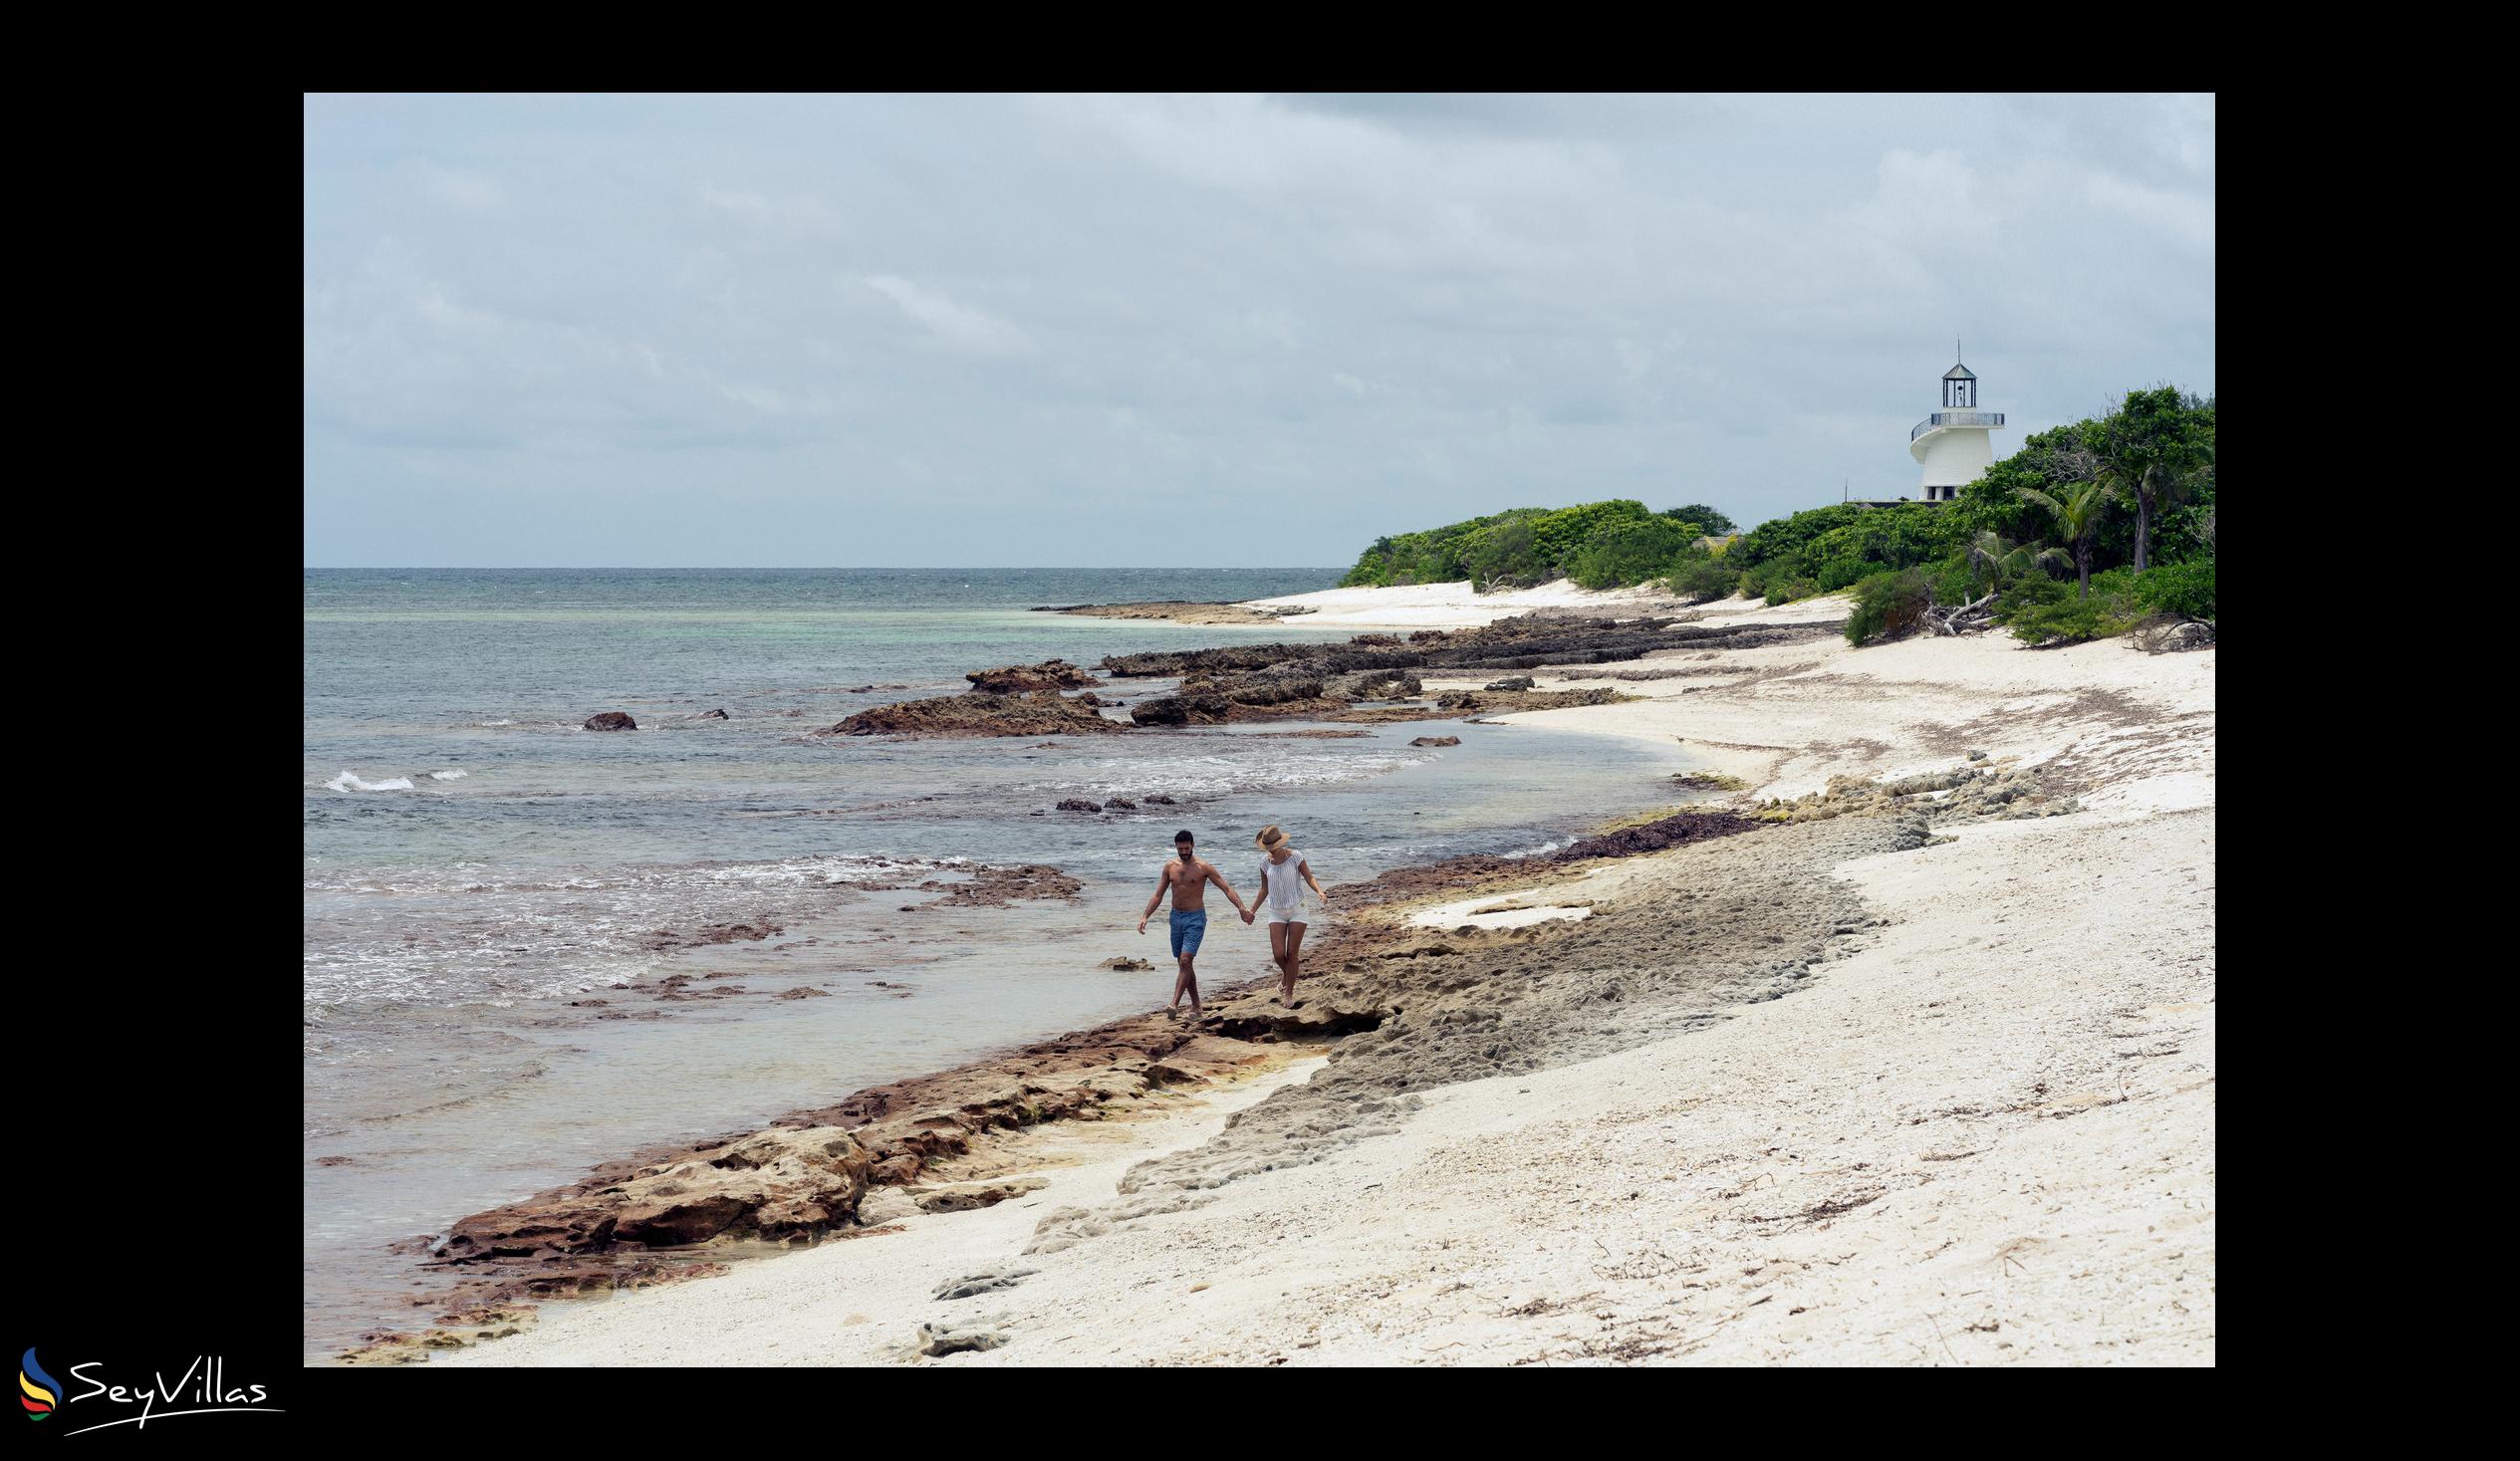 Foto 175: Four Seasons Resort Desroches Island - Posizione - Desroches Island (Seychelles)